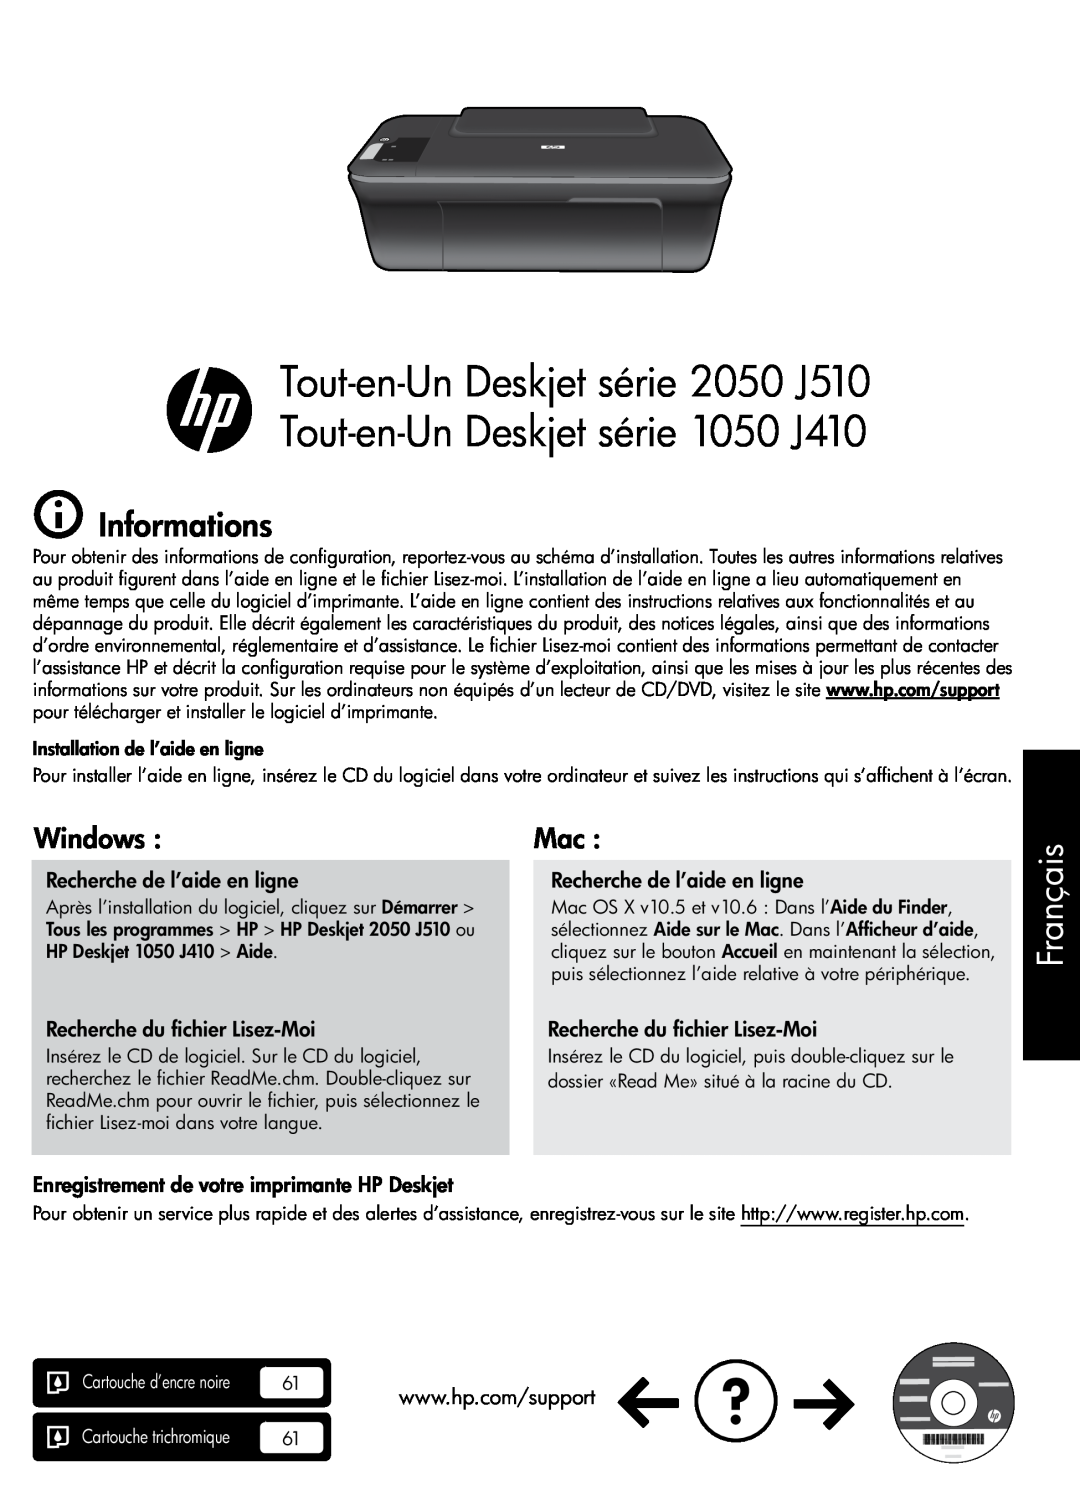 HP 2050 - J510a Tout-en-Un Deskjet série 2050 J510 Tout-en-Un Deskjet série 1050 J410, Français, Informations, Windows 